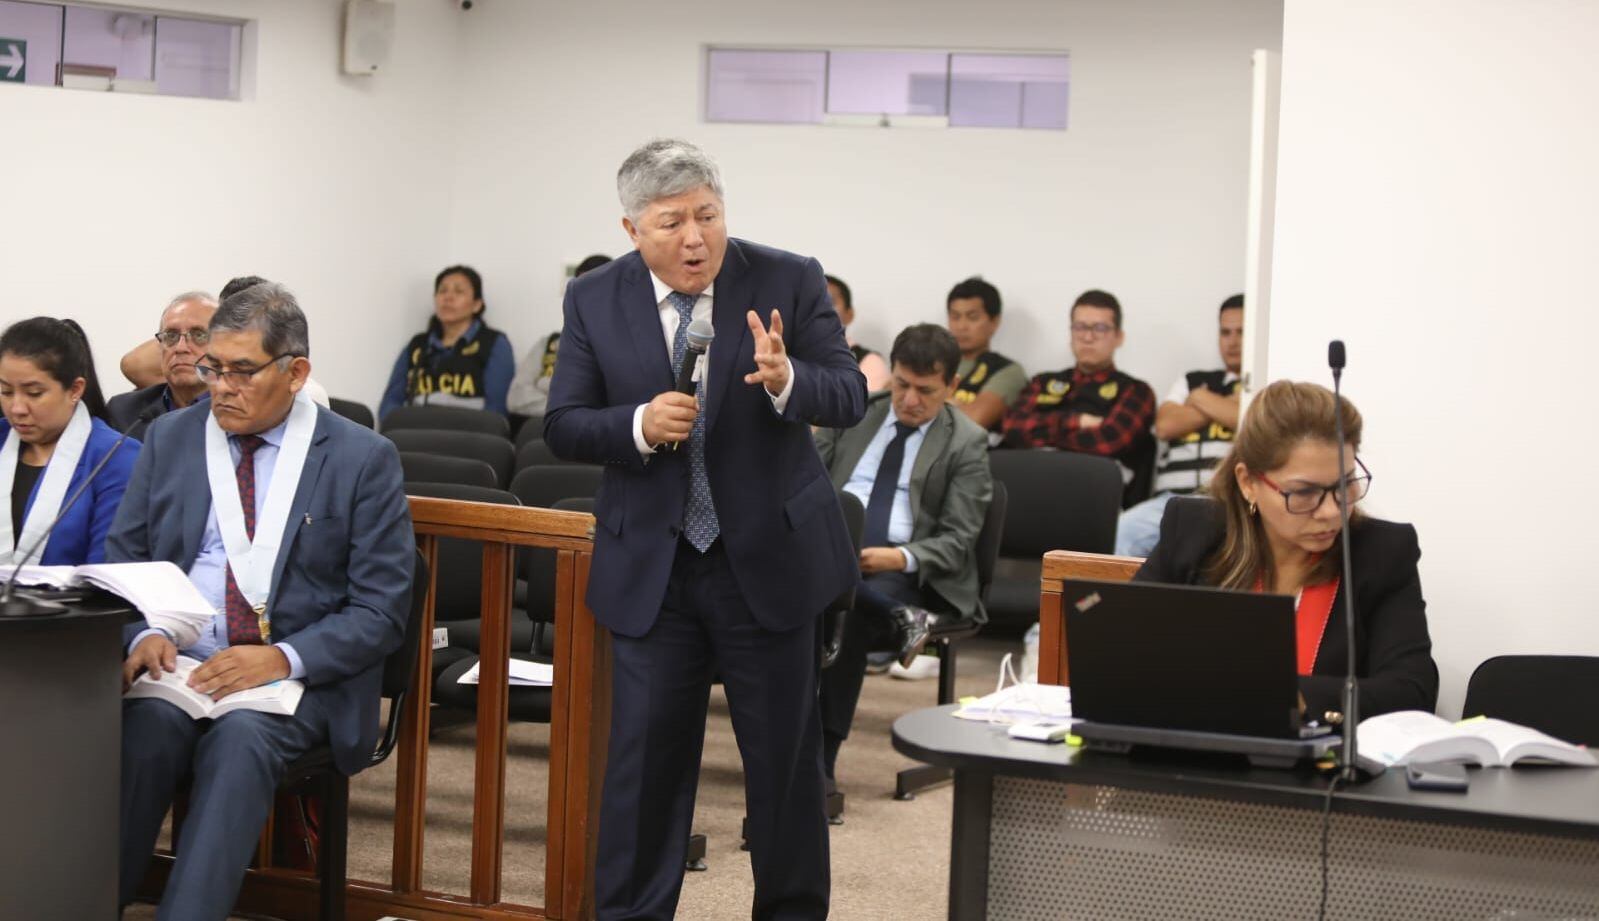 Mateo Castañeda y Marita Barreto durante la audiencia. Foto: Poder Judicial